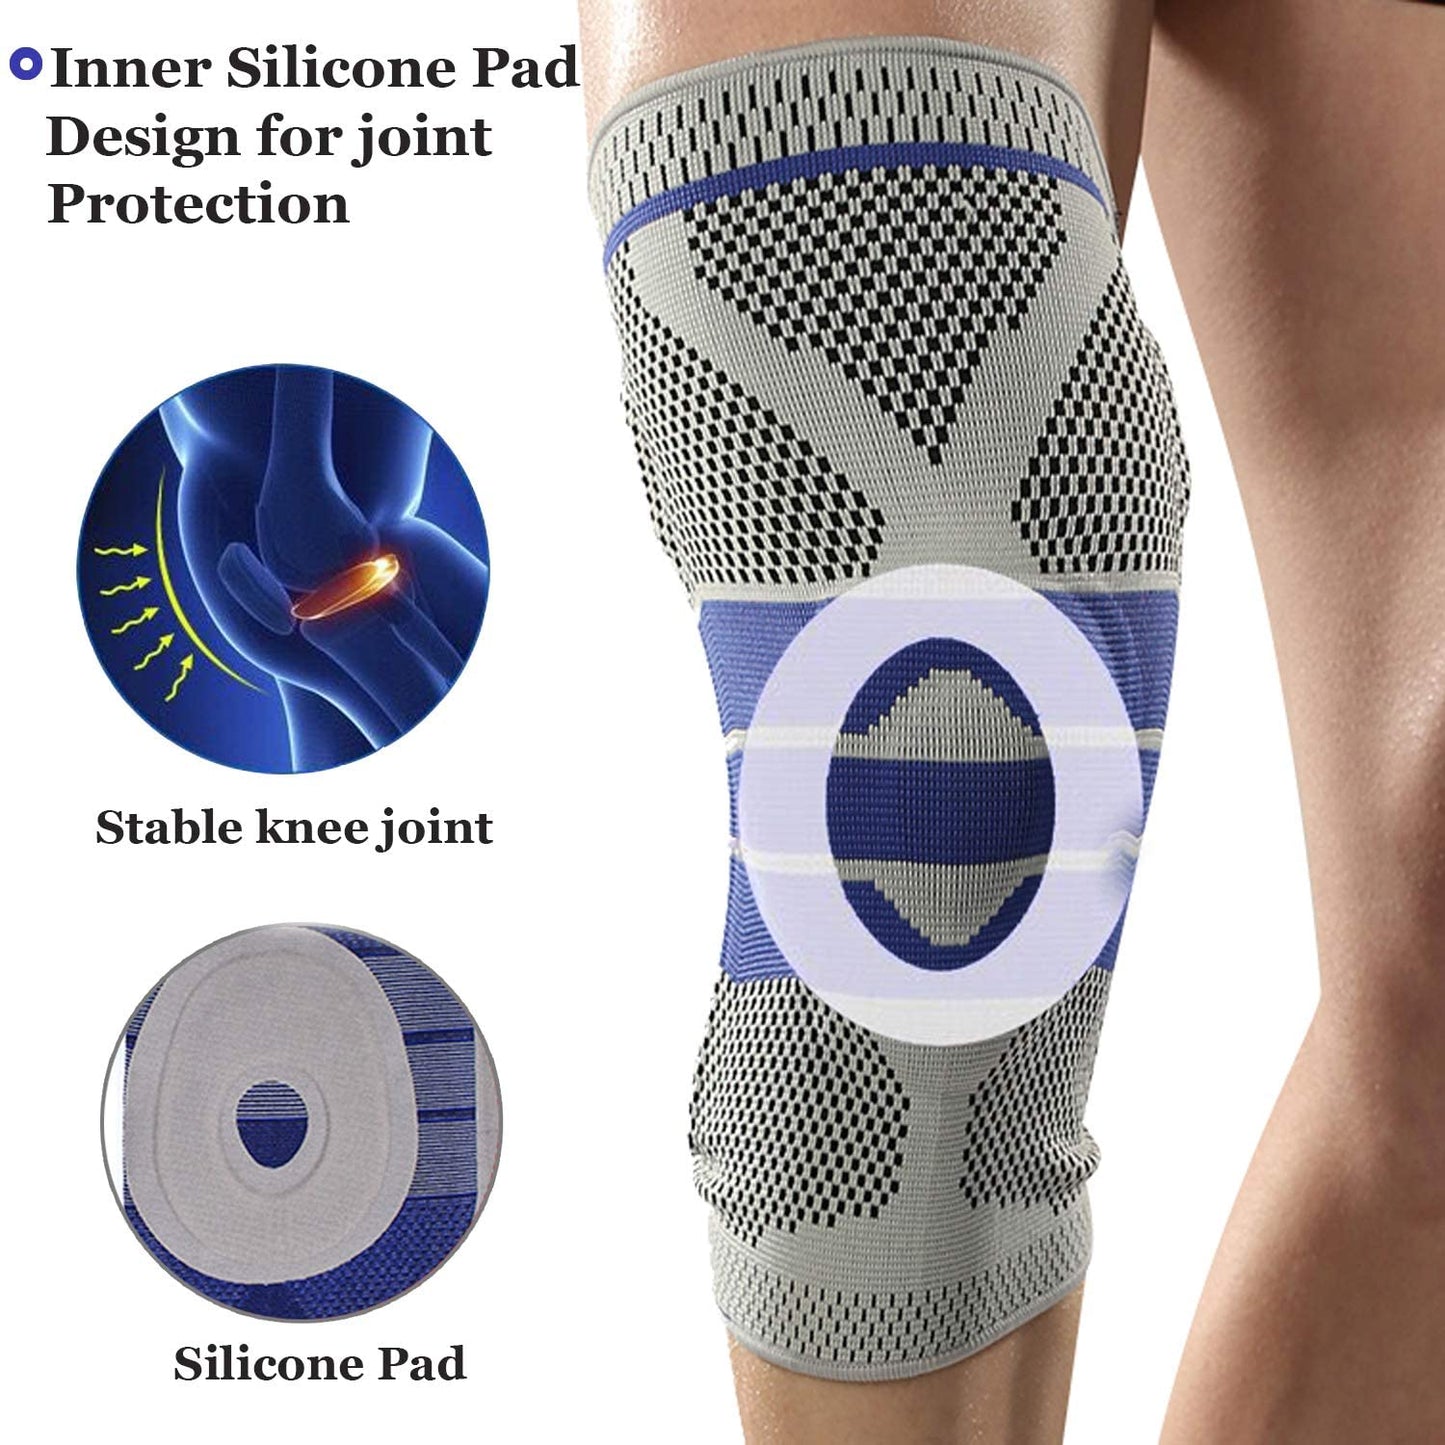 US$ 24.77 - Knee Braces for Knee Pain Women & Men - 2 Pack Knee Brace for  Knee Pain Set, Knee Brace Compression Sleeve, Knee Braces for Knee Pain  Meniscus Tear, ACL